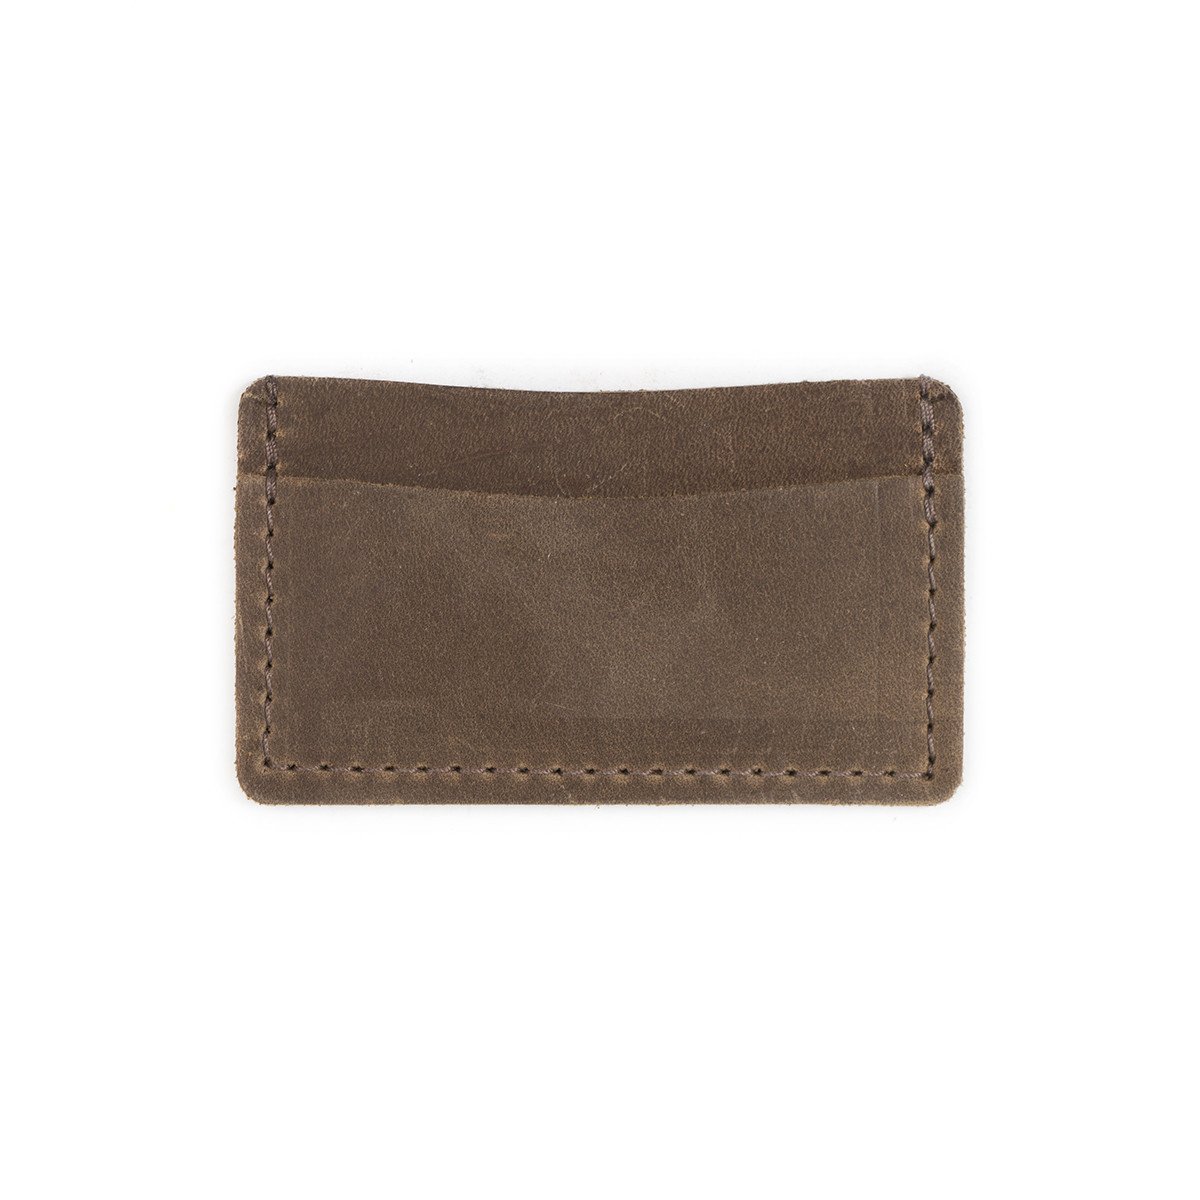 Super Slim Leather Front Pocket Wallet - Our Slimmest Wallet – Rustico